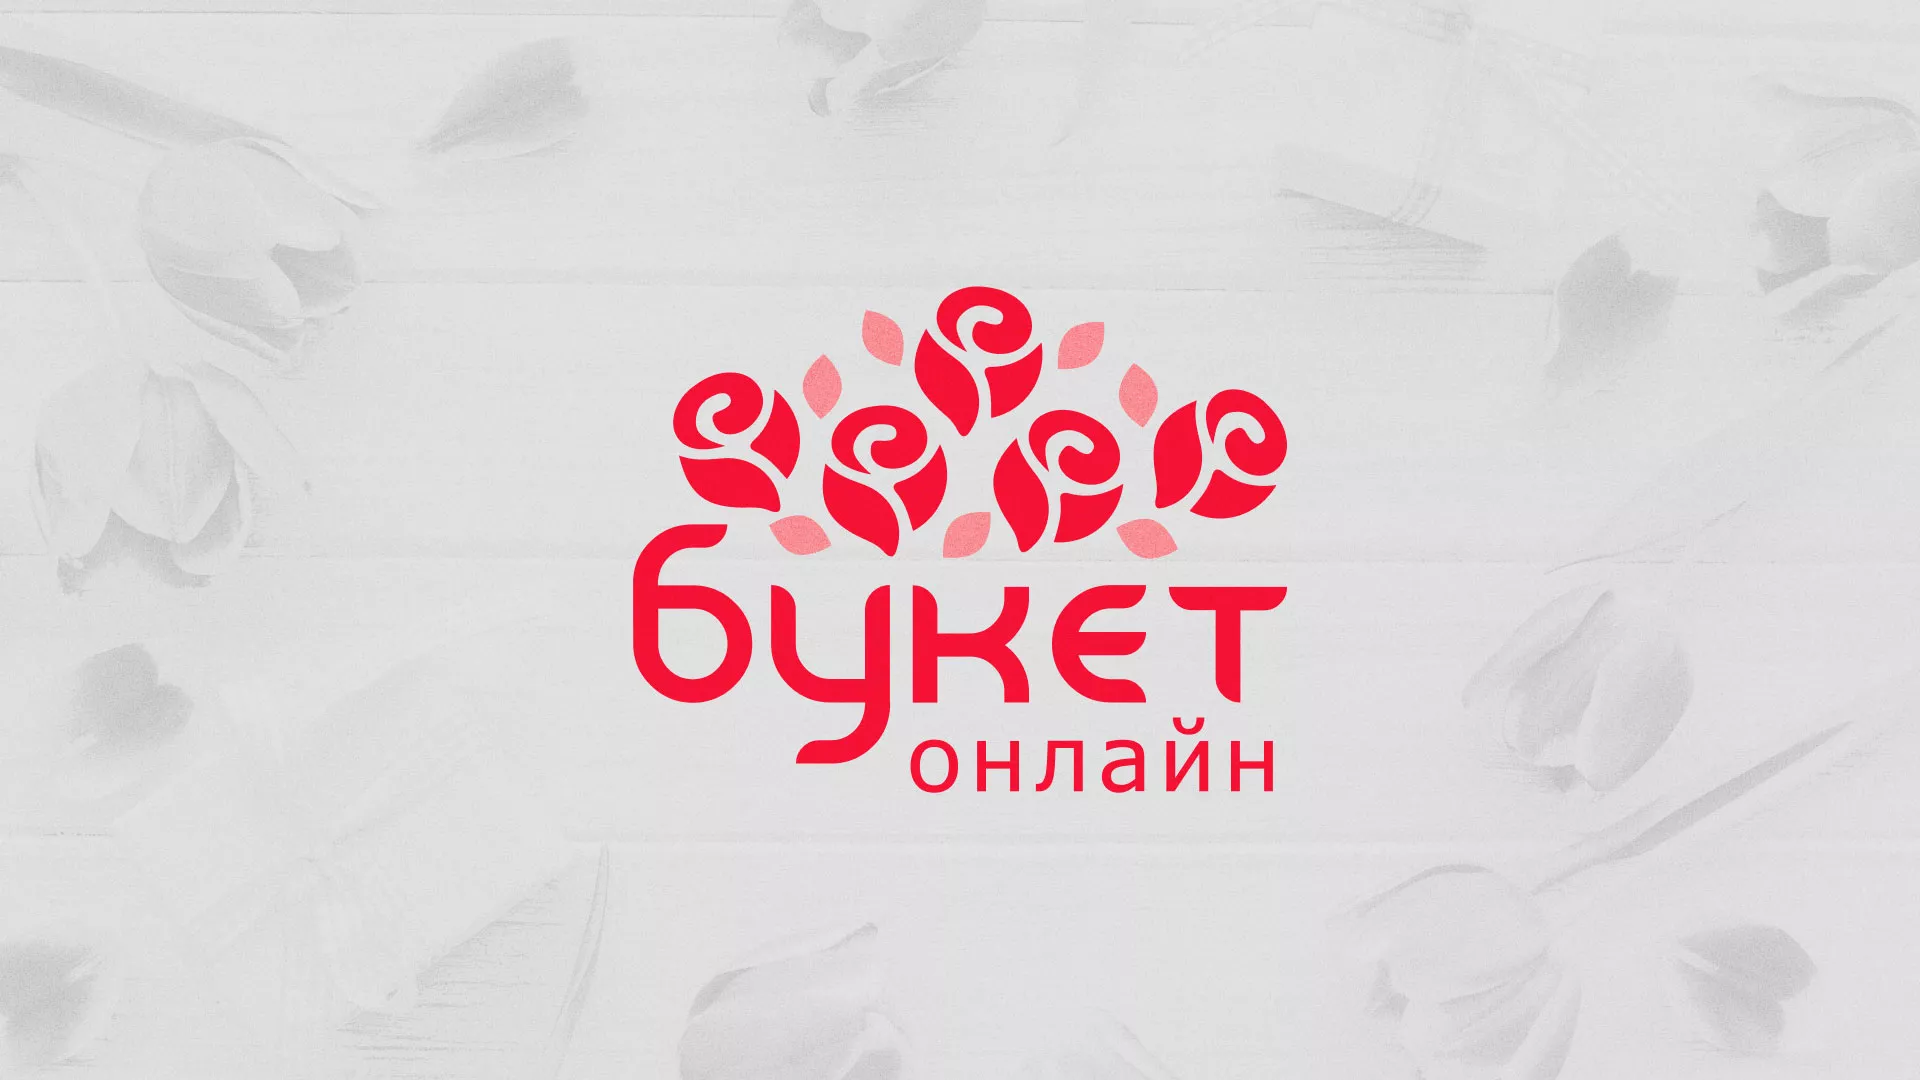 Создание интернет-магазина «Букет-онлайн» по цветам в Коломне